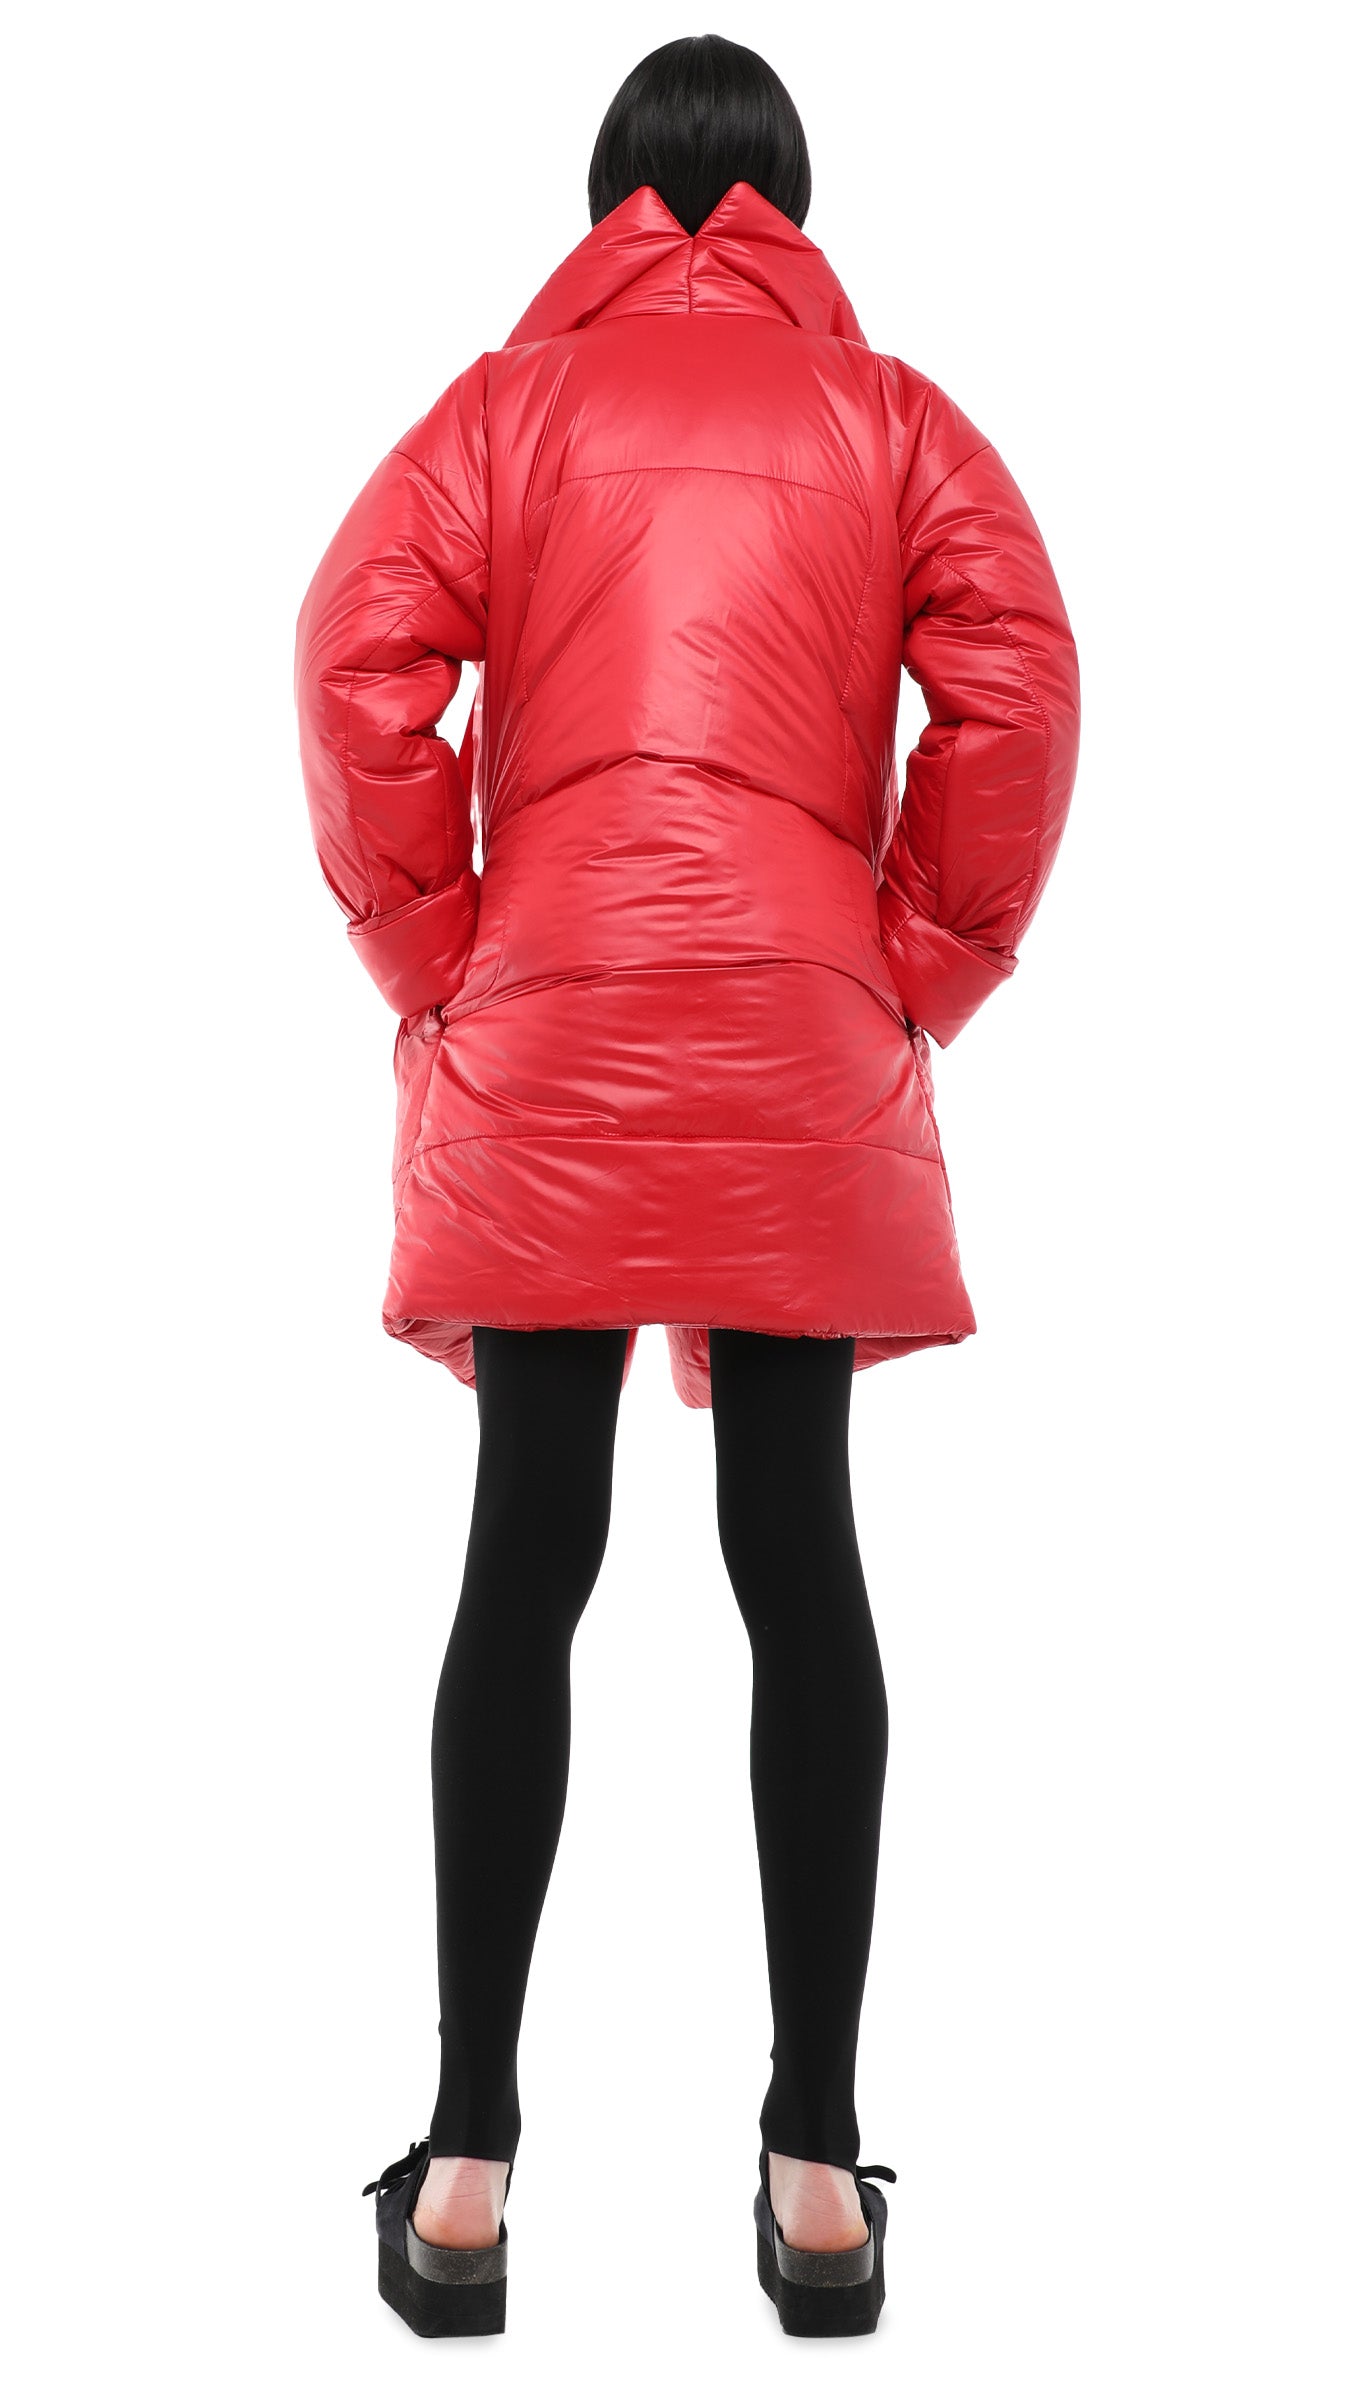 Norma Kamali Sleeping Bag Blanket Coat - Red / Size Xs/S